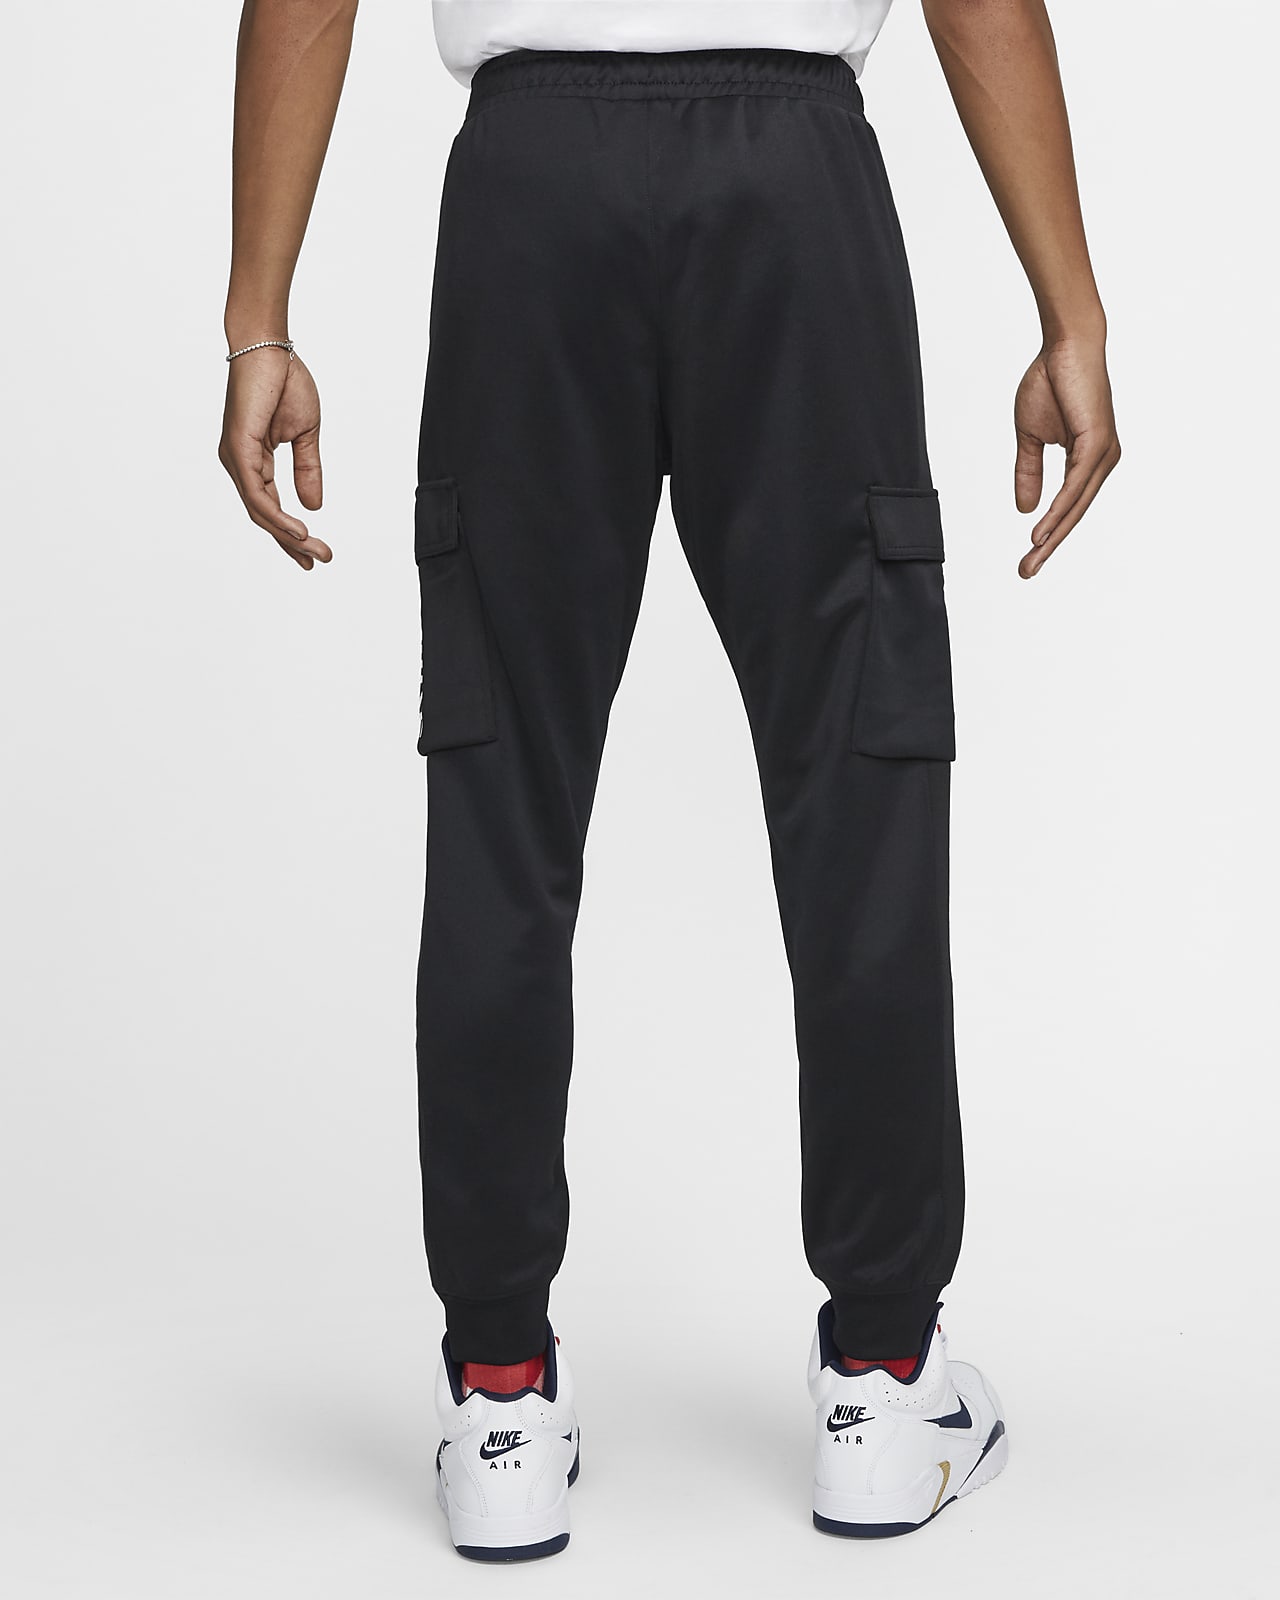 Nike Sportswear Hybrid Men's Joggers. LU